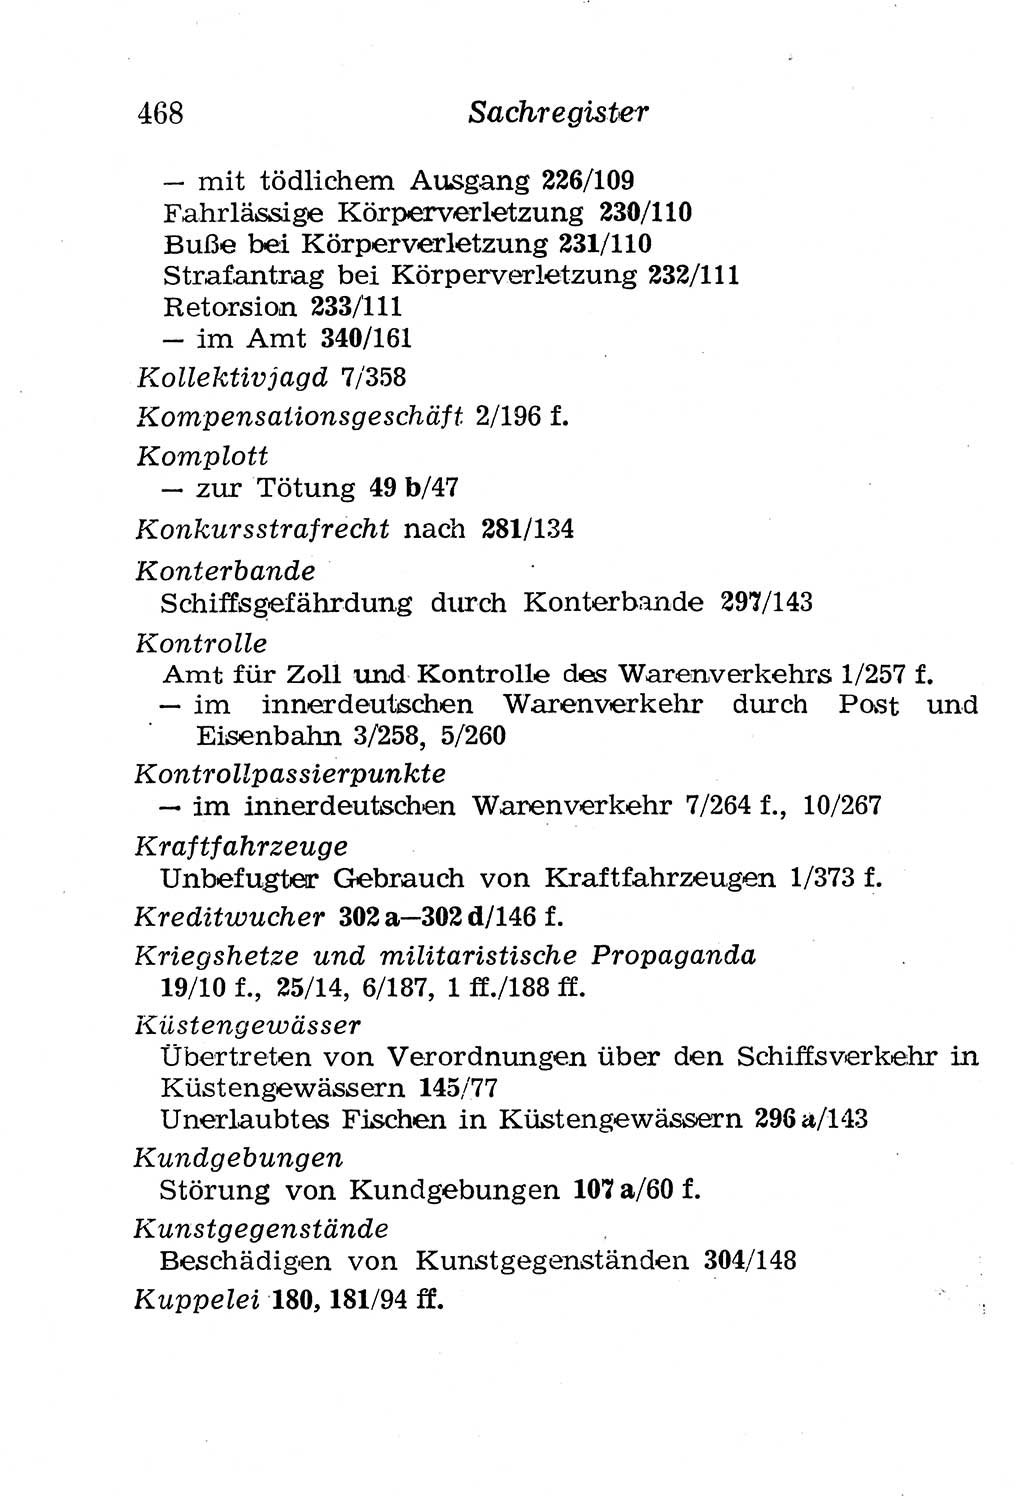 Strafgesetzbuch (StGB) und andere Strafgesetze [Deutsche Demokratische Republik (DDR)] 1958, Seite 468 (StGB Strafges. DDR 1958, S. 468)